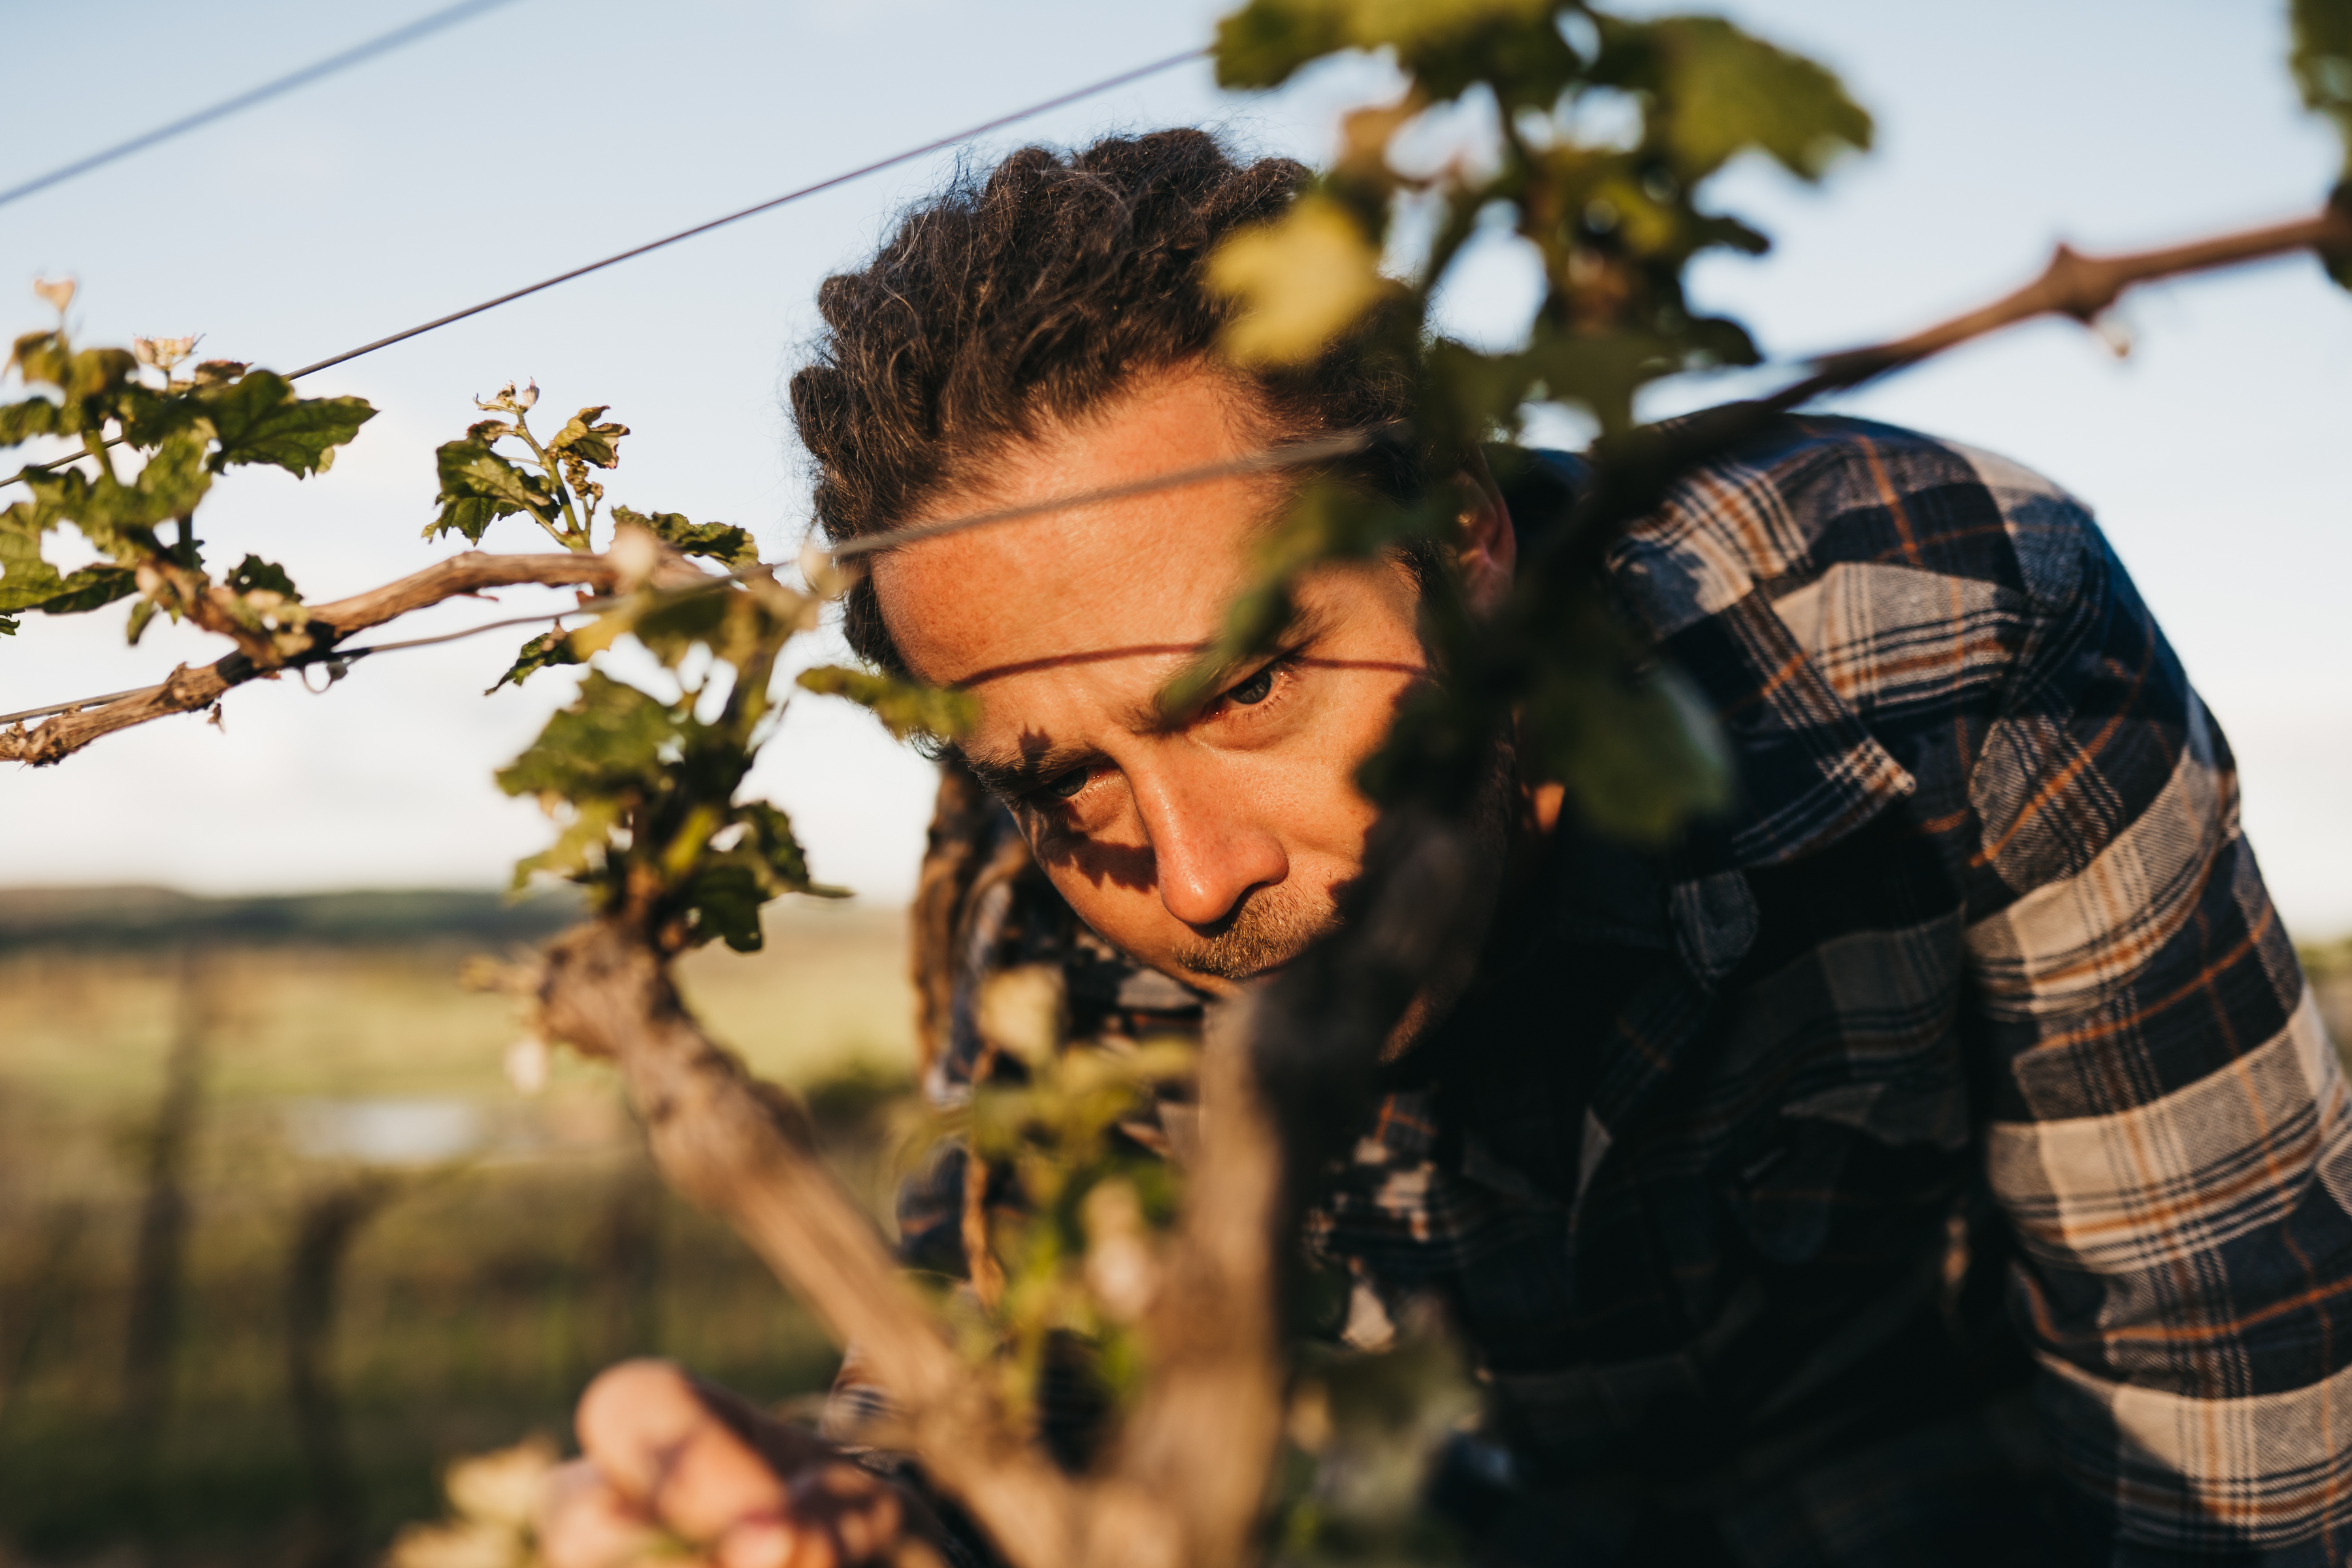 Man inspecting grapes at the vineyard